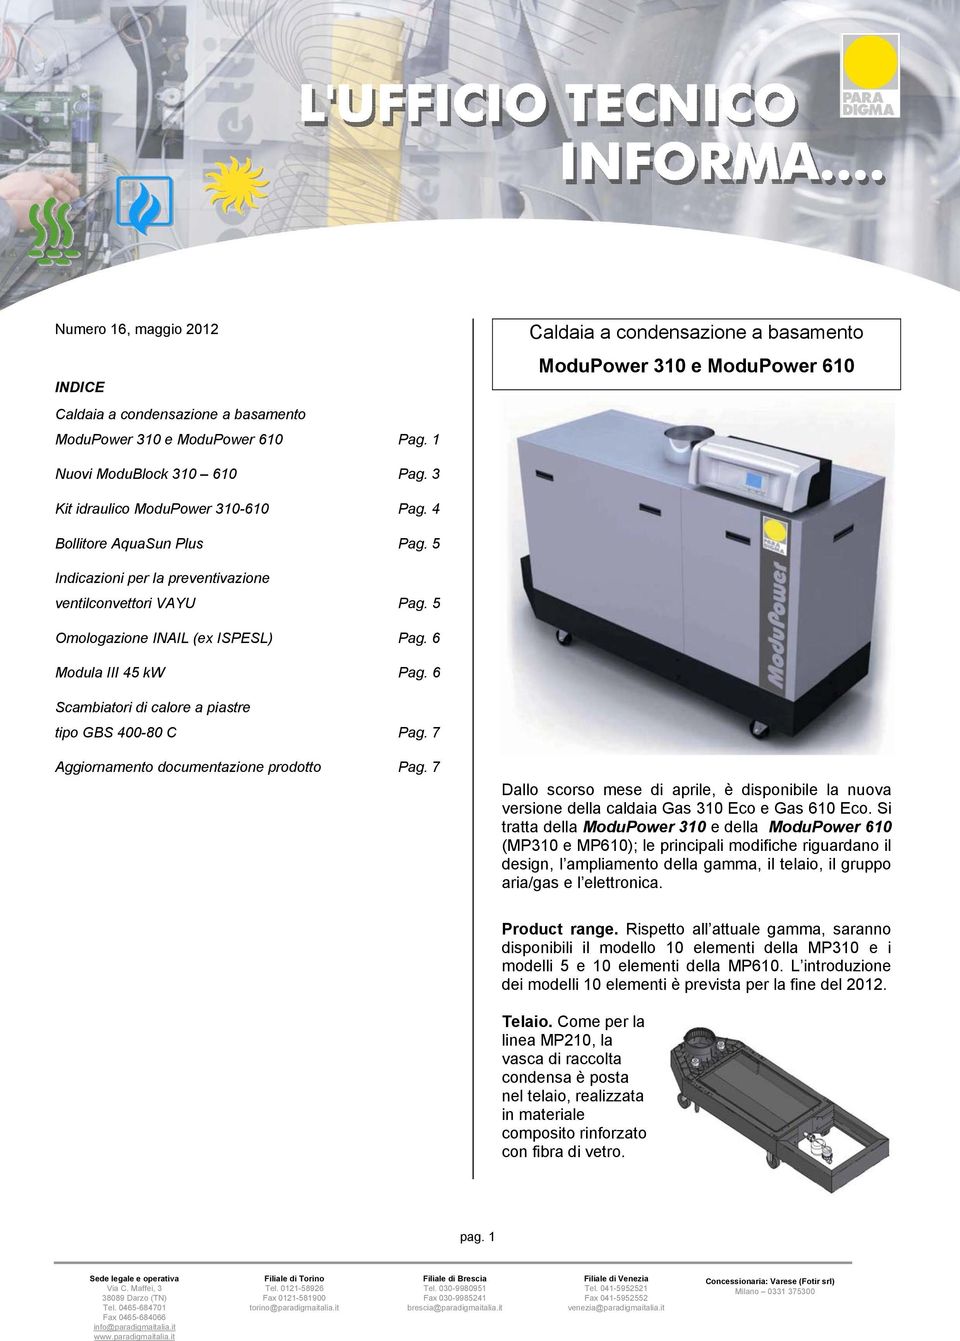 6 cambiatori di calore a piastre tipo GB 400-80 C Pag. 7 Aggiornamento documentazione prodotto Pag.